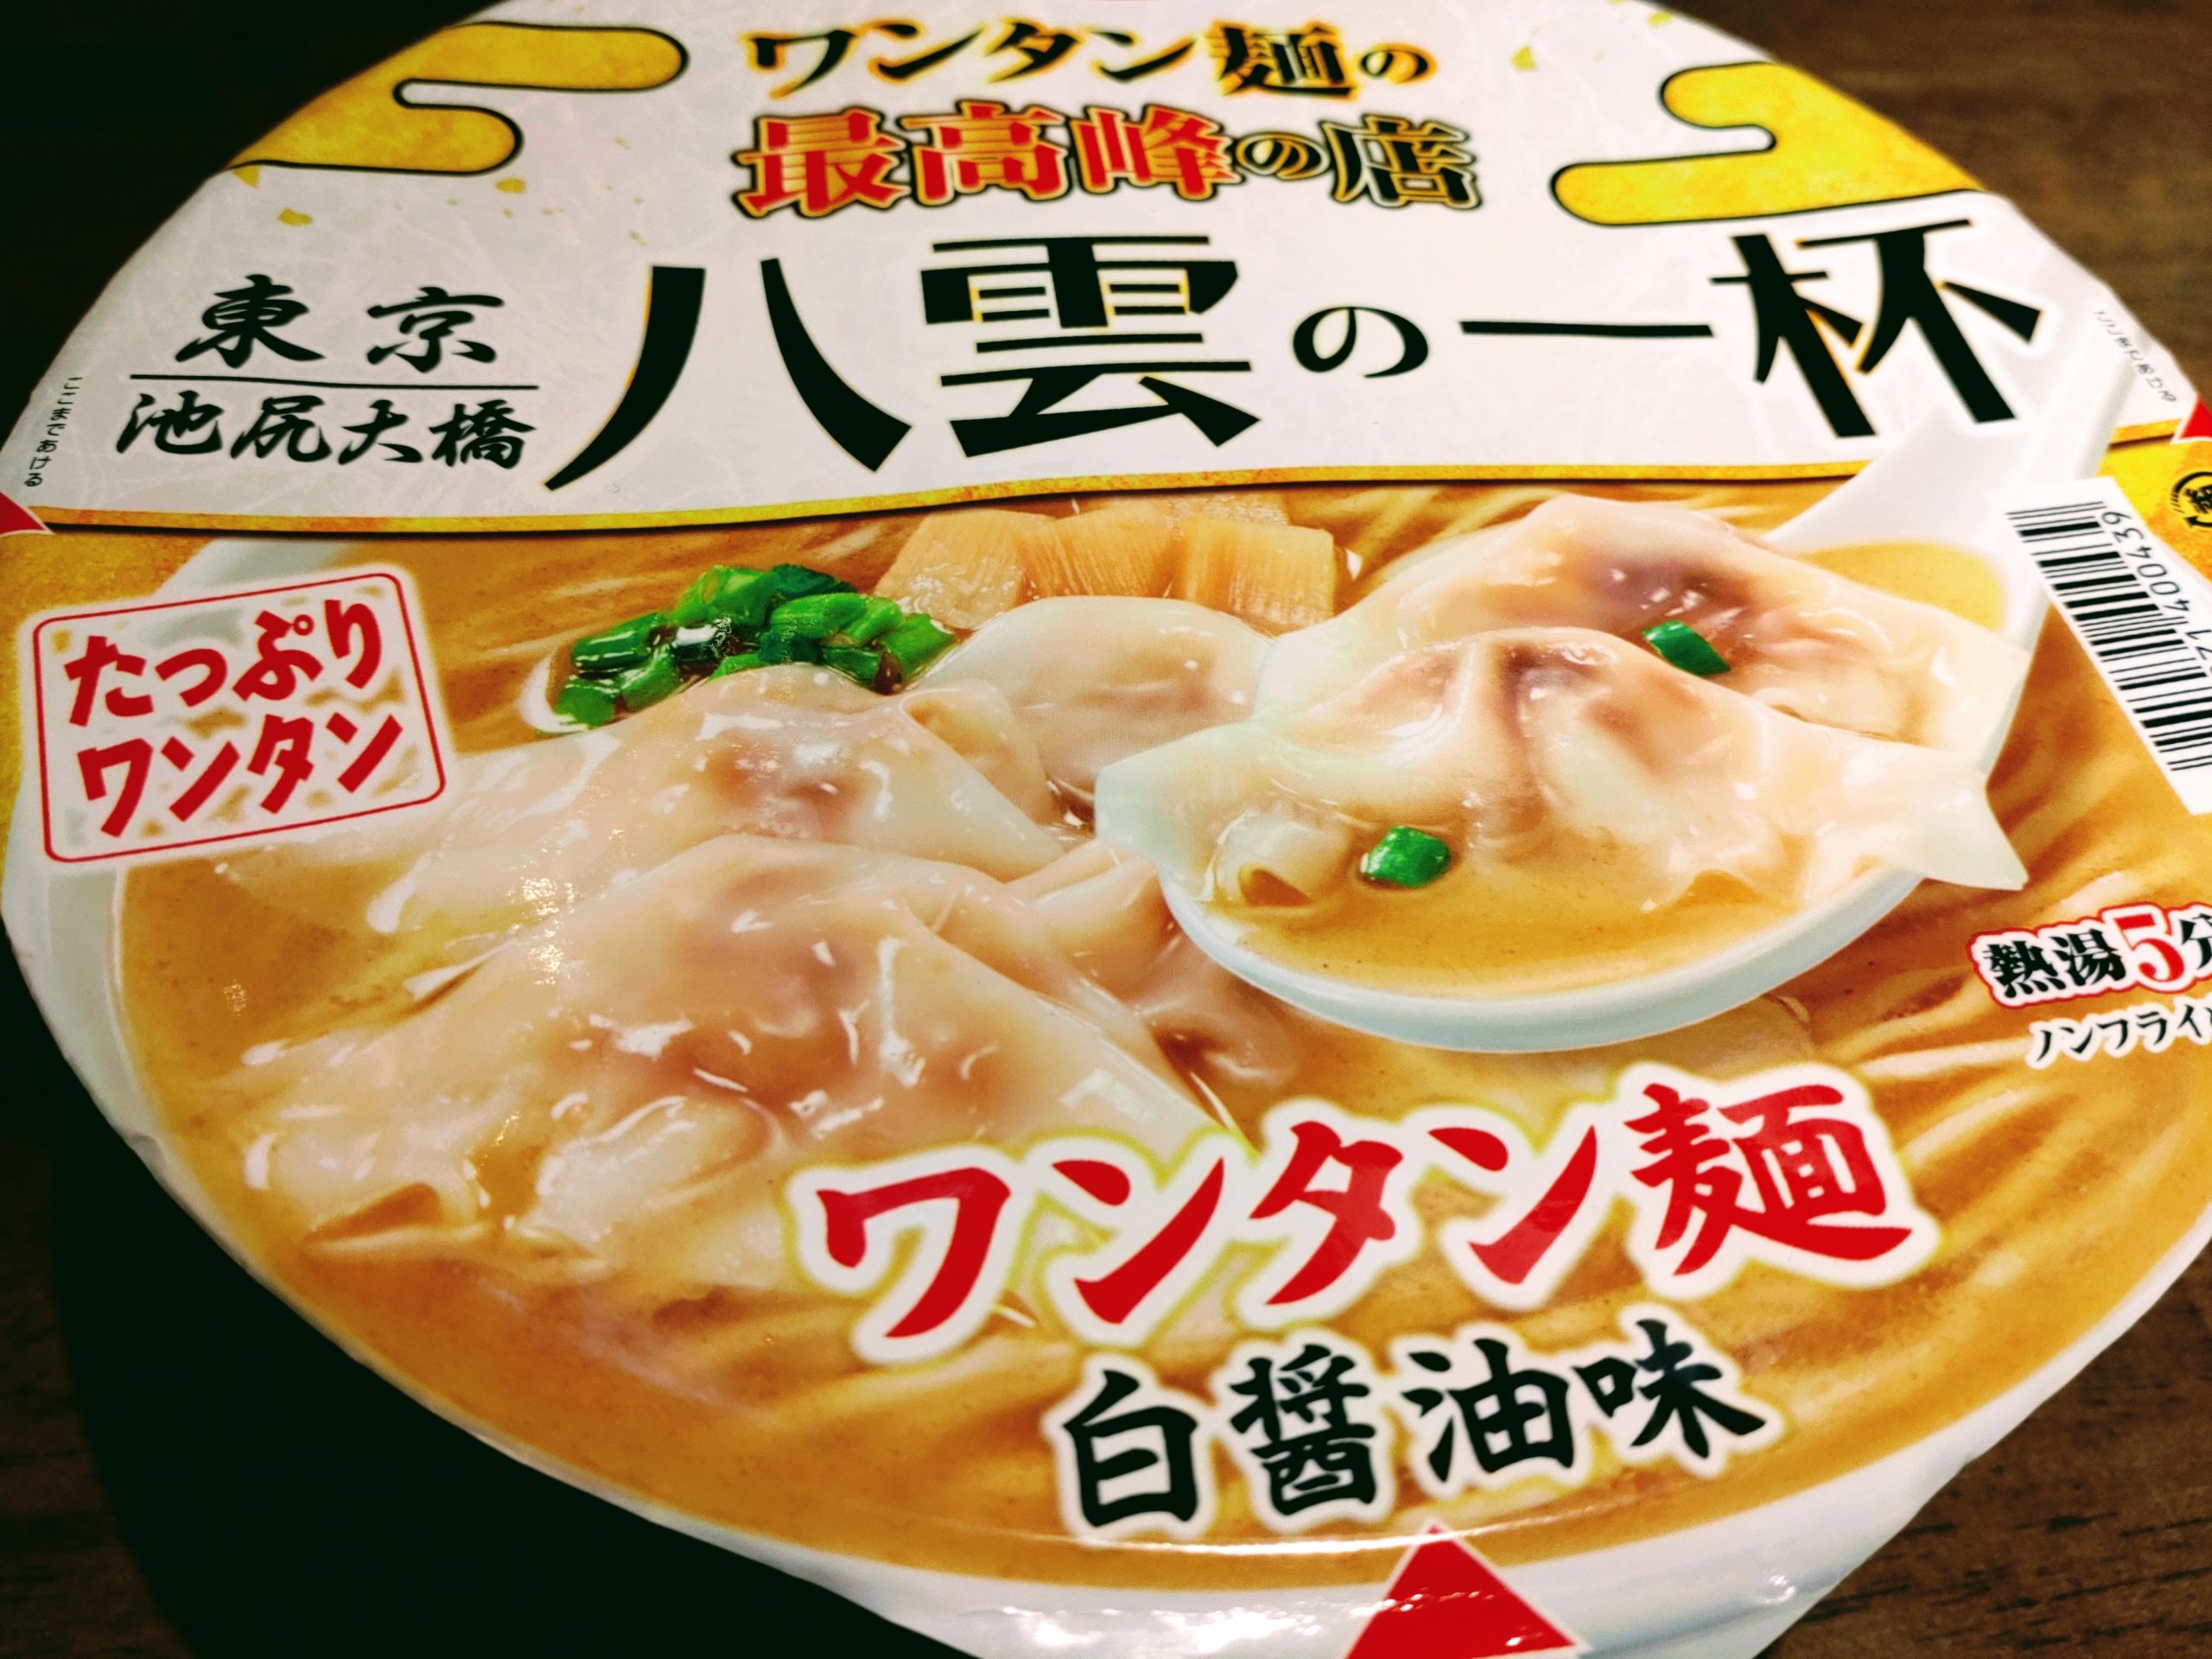 ワンタン麺の最高峰の店 八雲の一杯 ワンタン麺 白醤油味のパッケージ